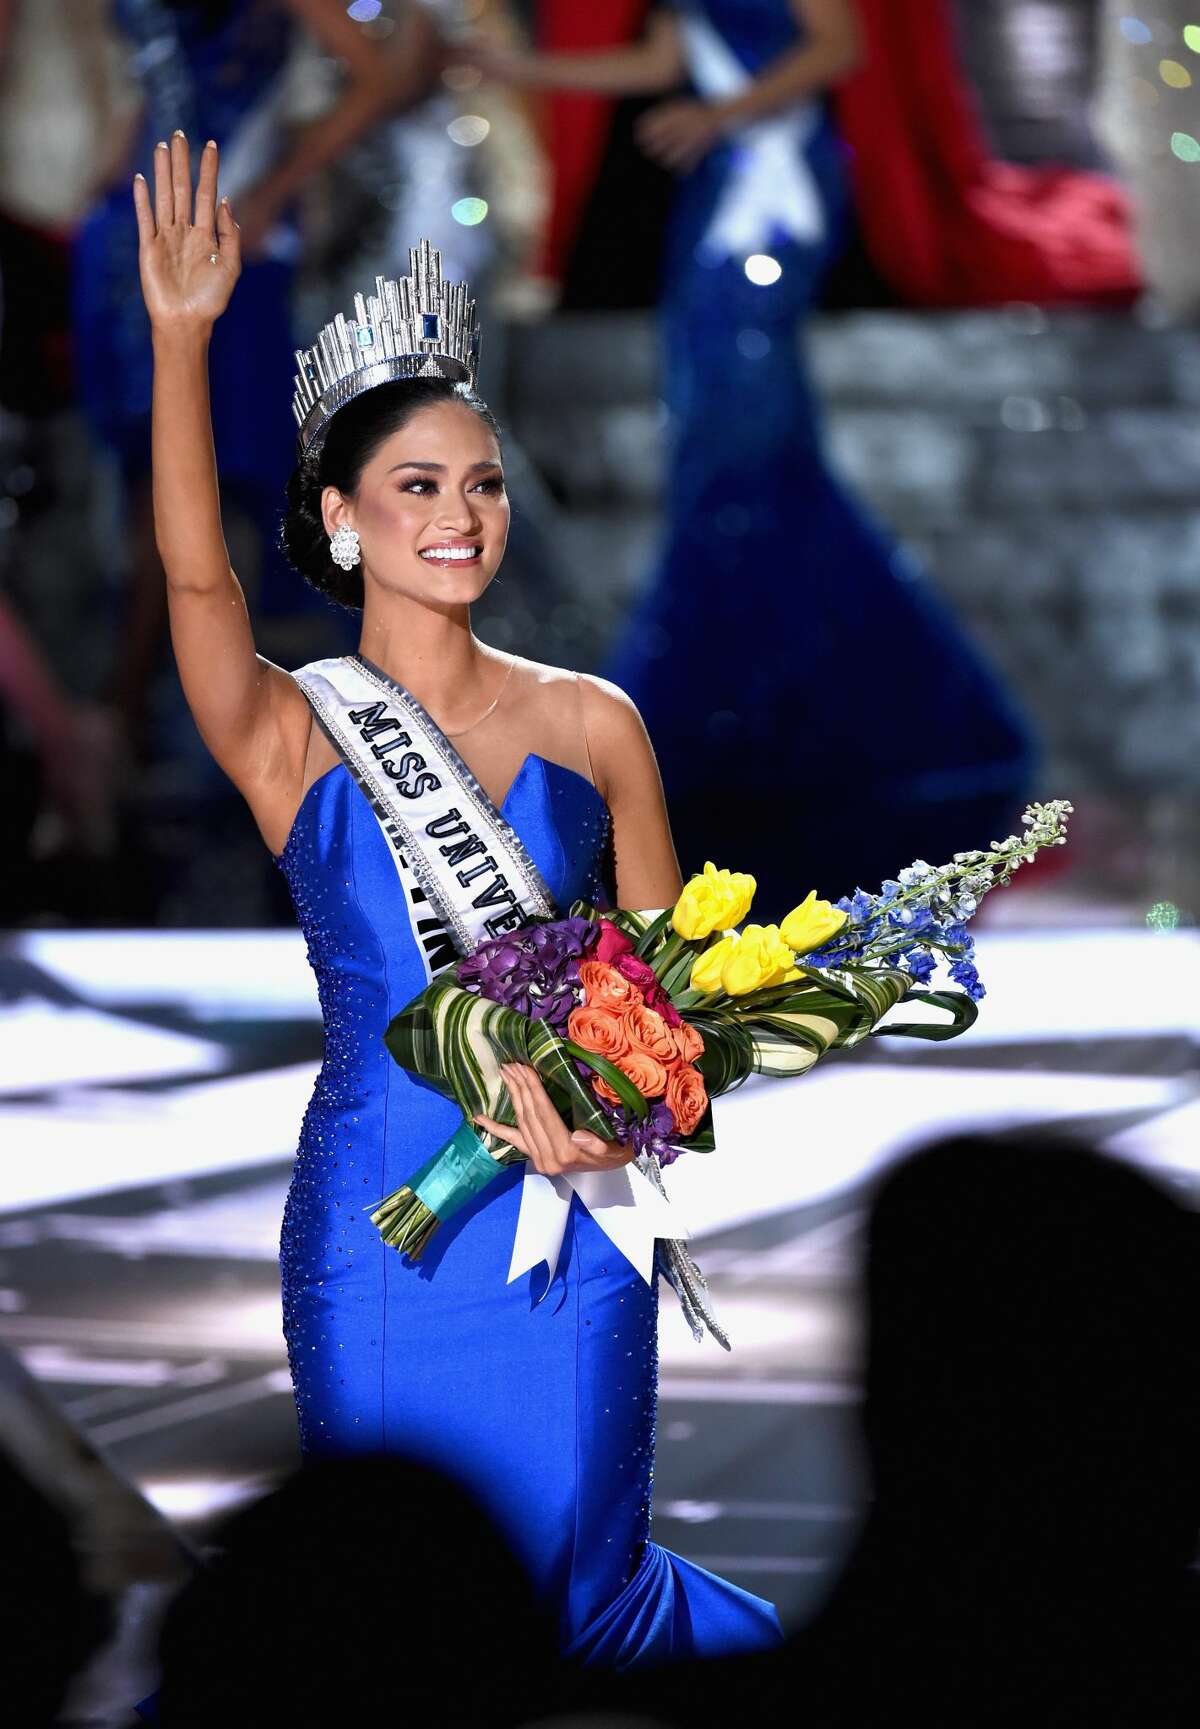 Then Miss PhilippinesPia WurtzbachYear: 2015